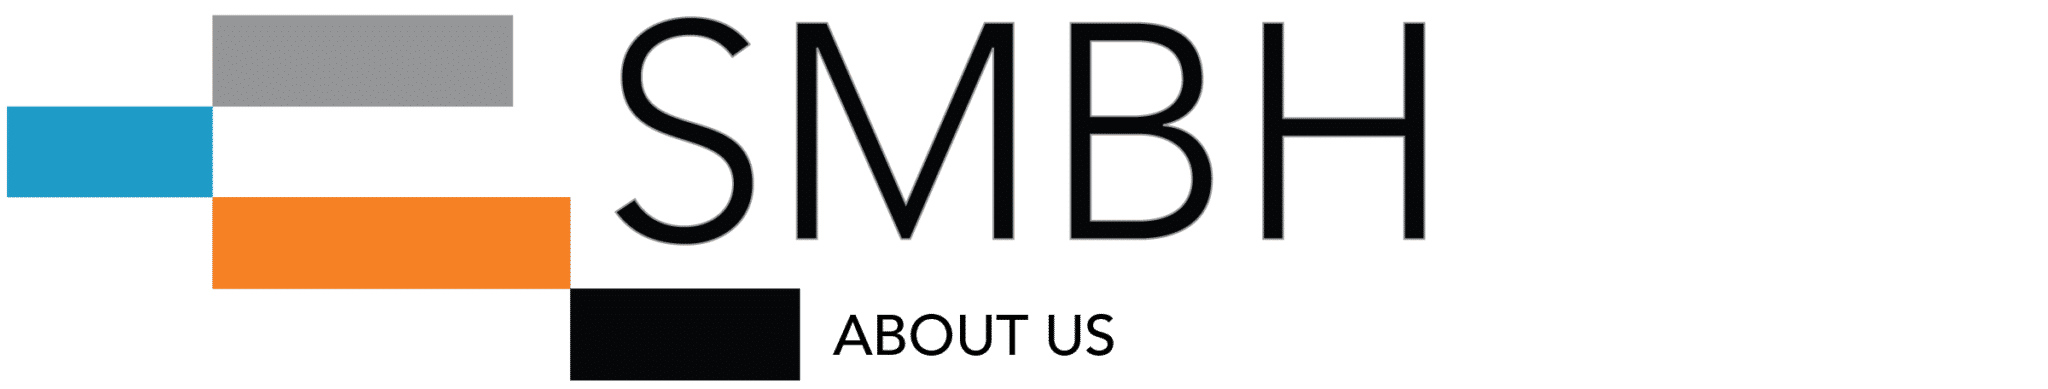 SMBH Logo - About Us